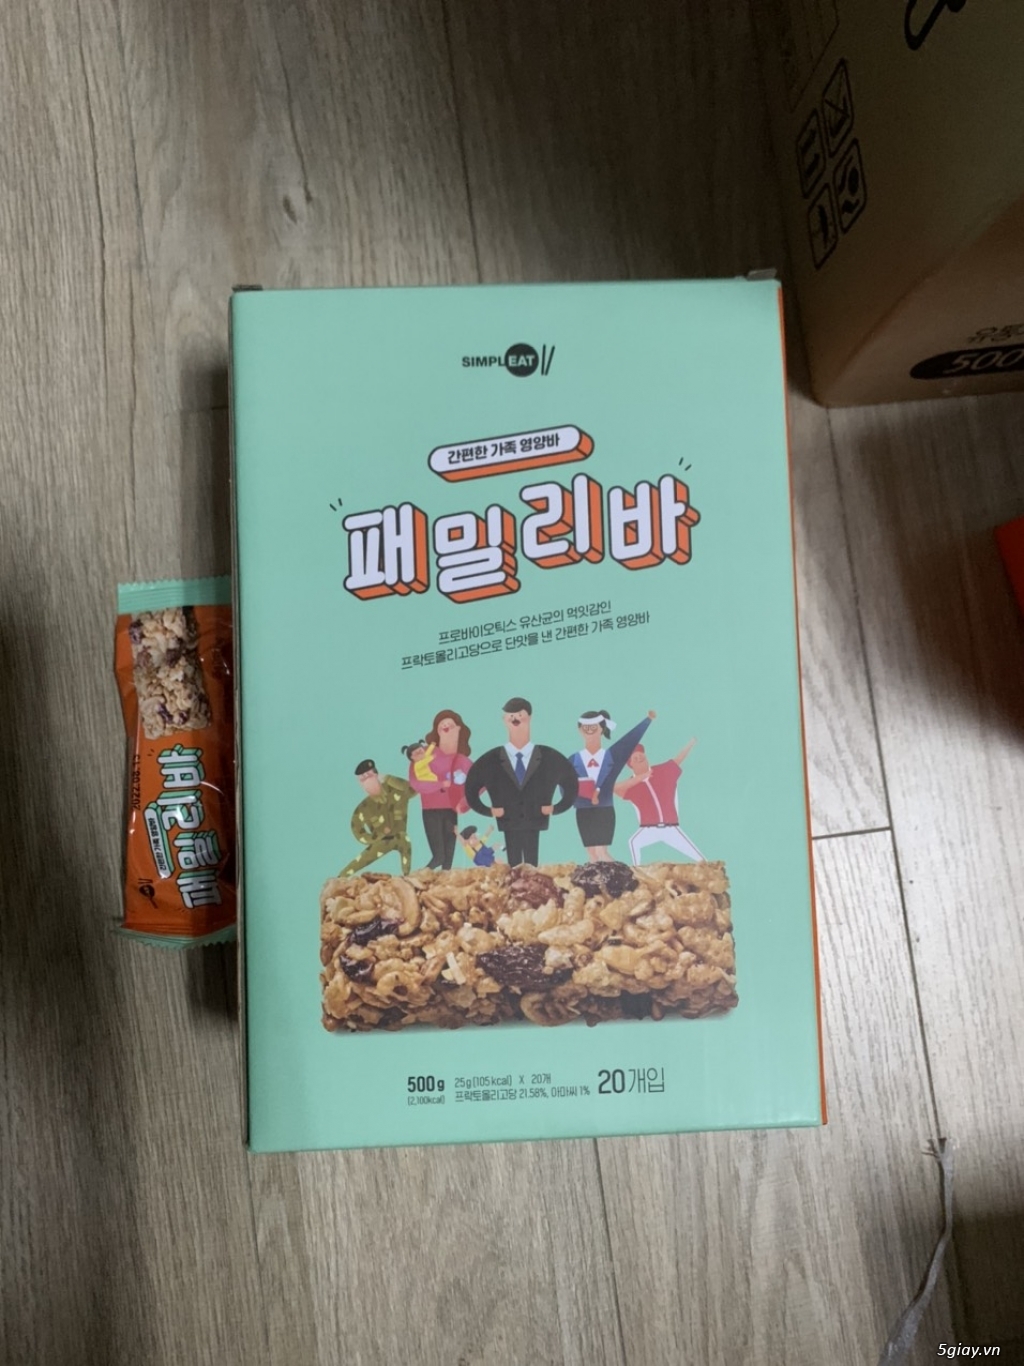 Family Bar - Thanh Bổ sung năng lượng, giúp giảm cân Hàn Quốc - 3